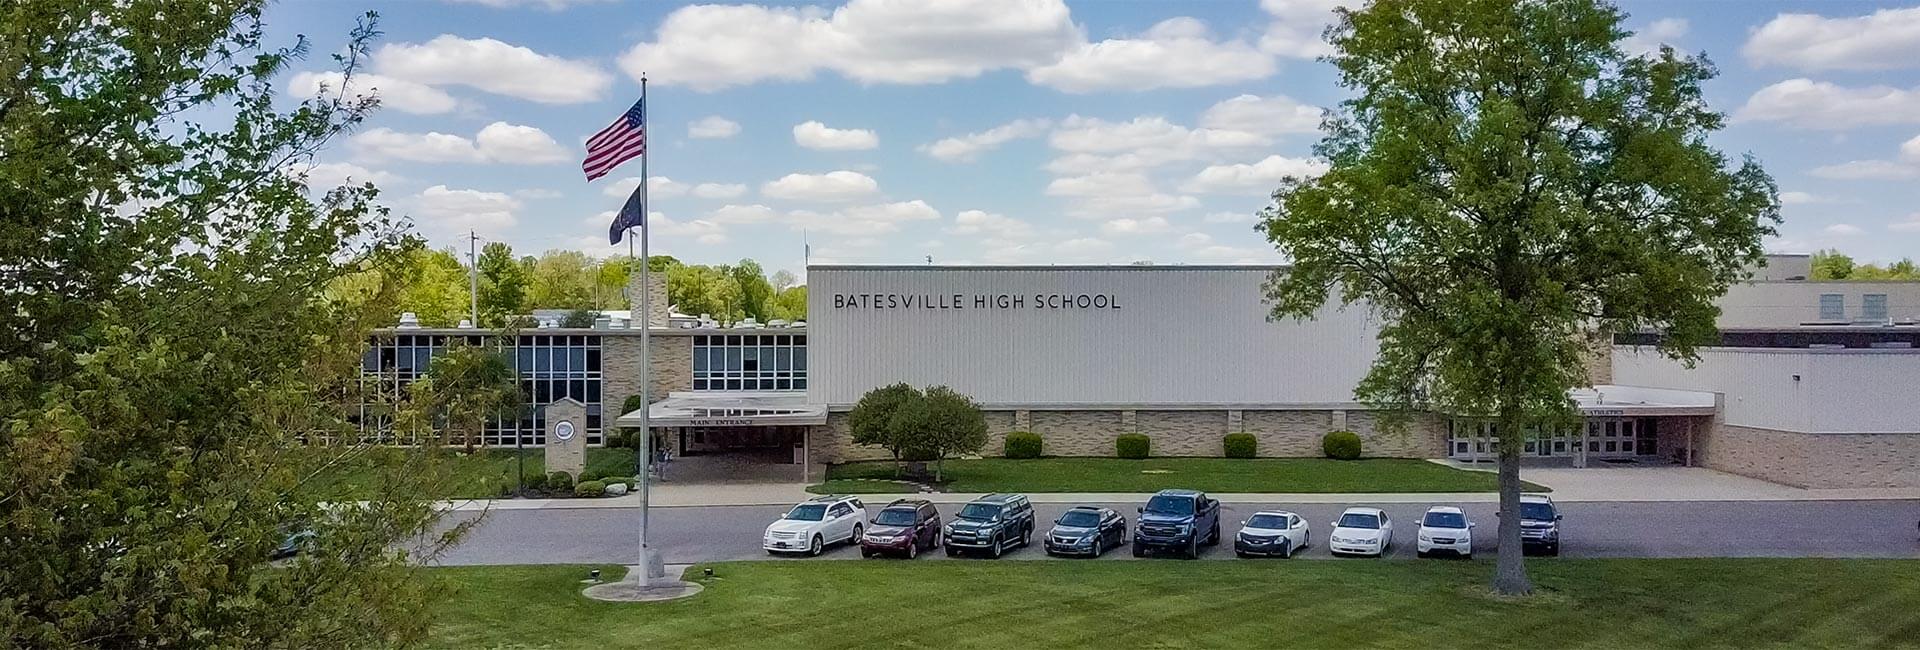 External view of Batesville High School